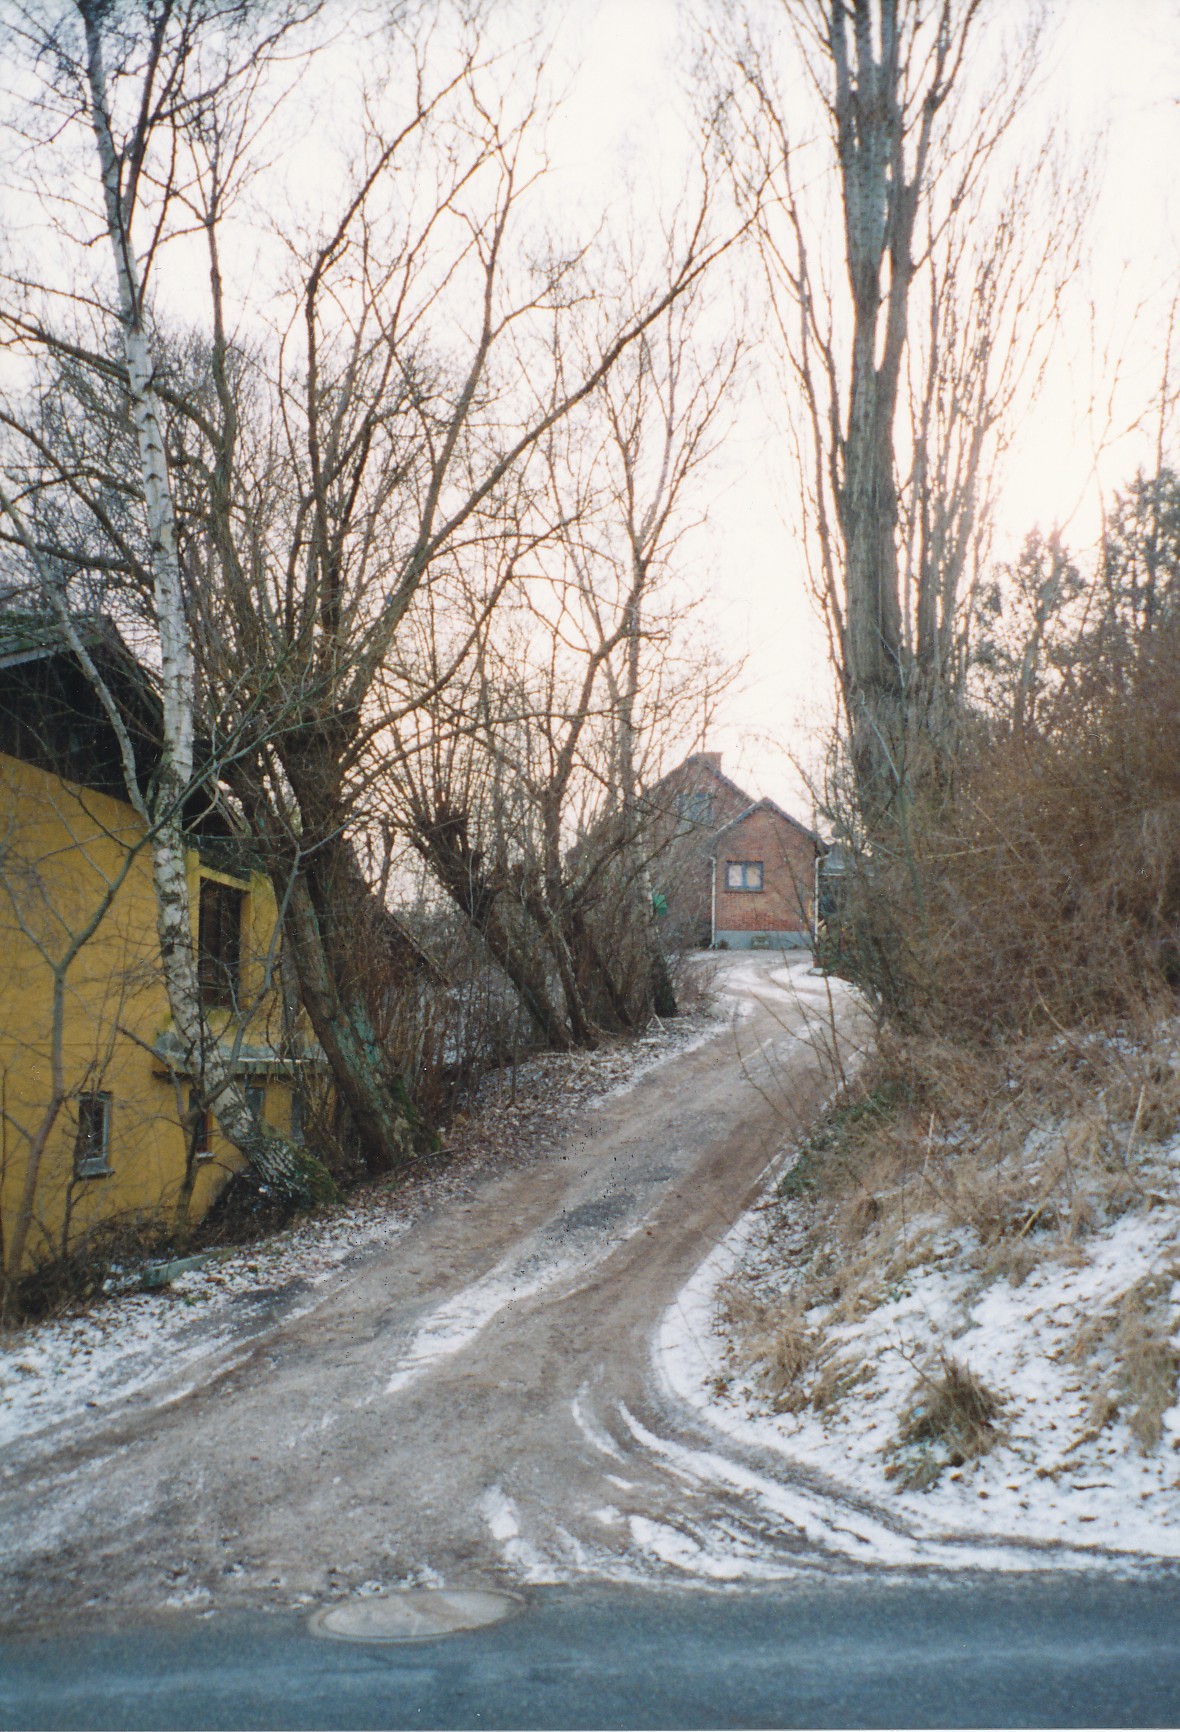 Stårupvej 36 - ca. 1995 (B7121)